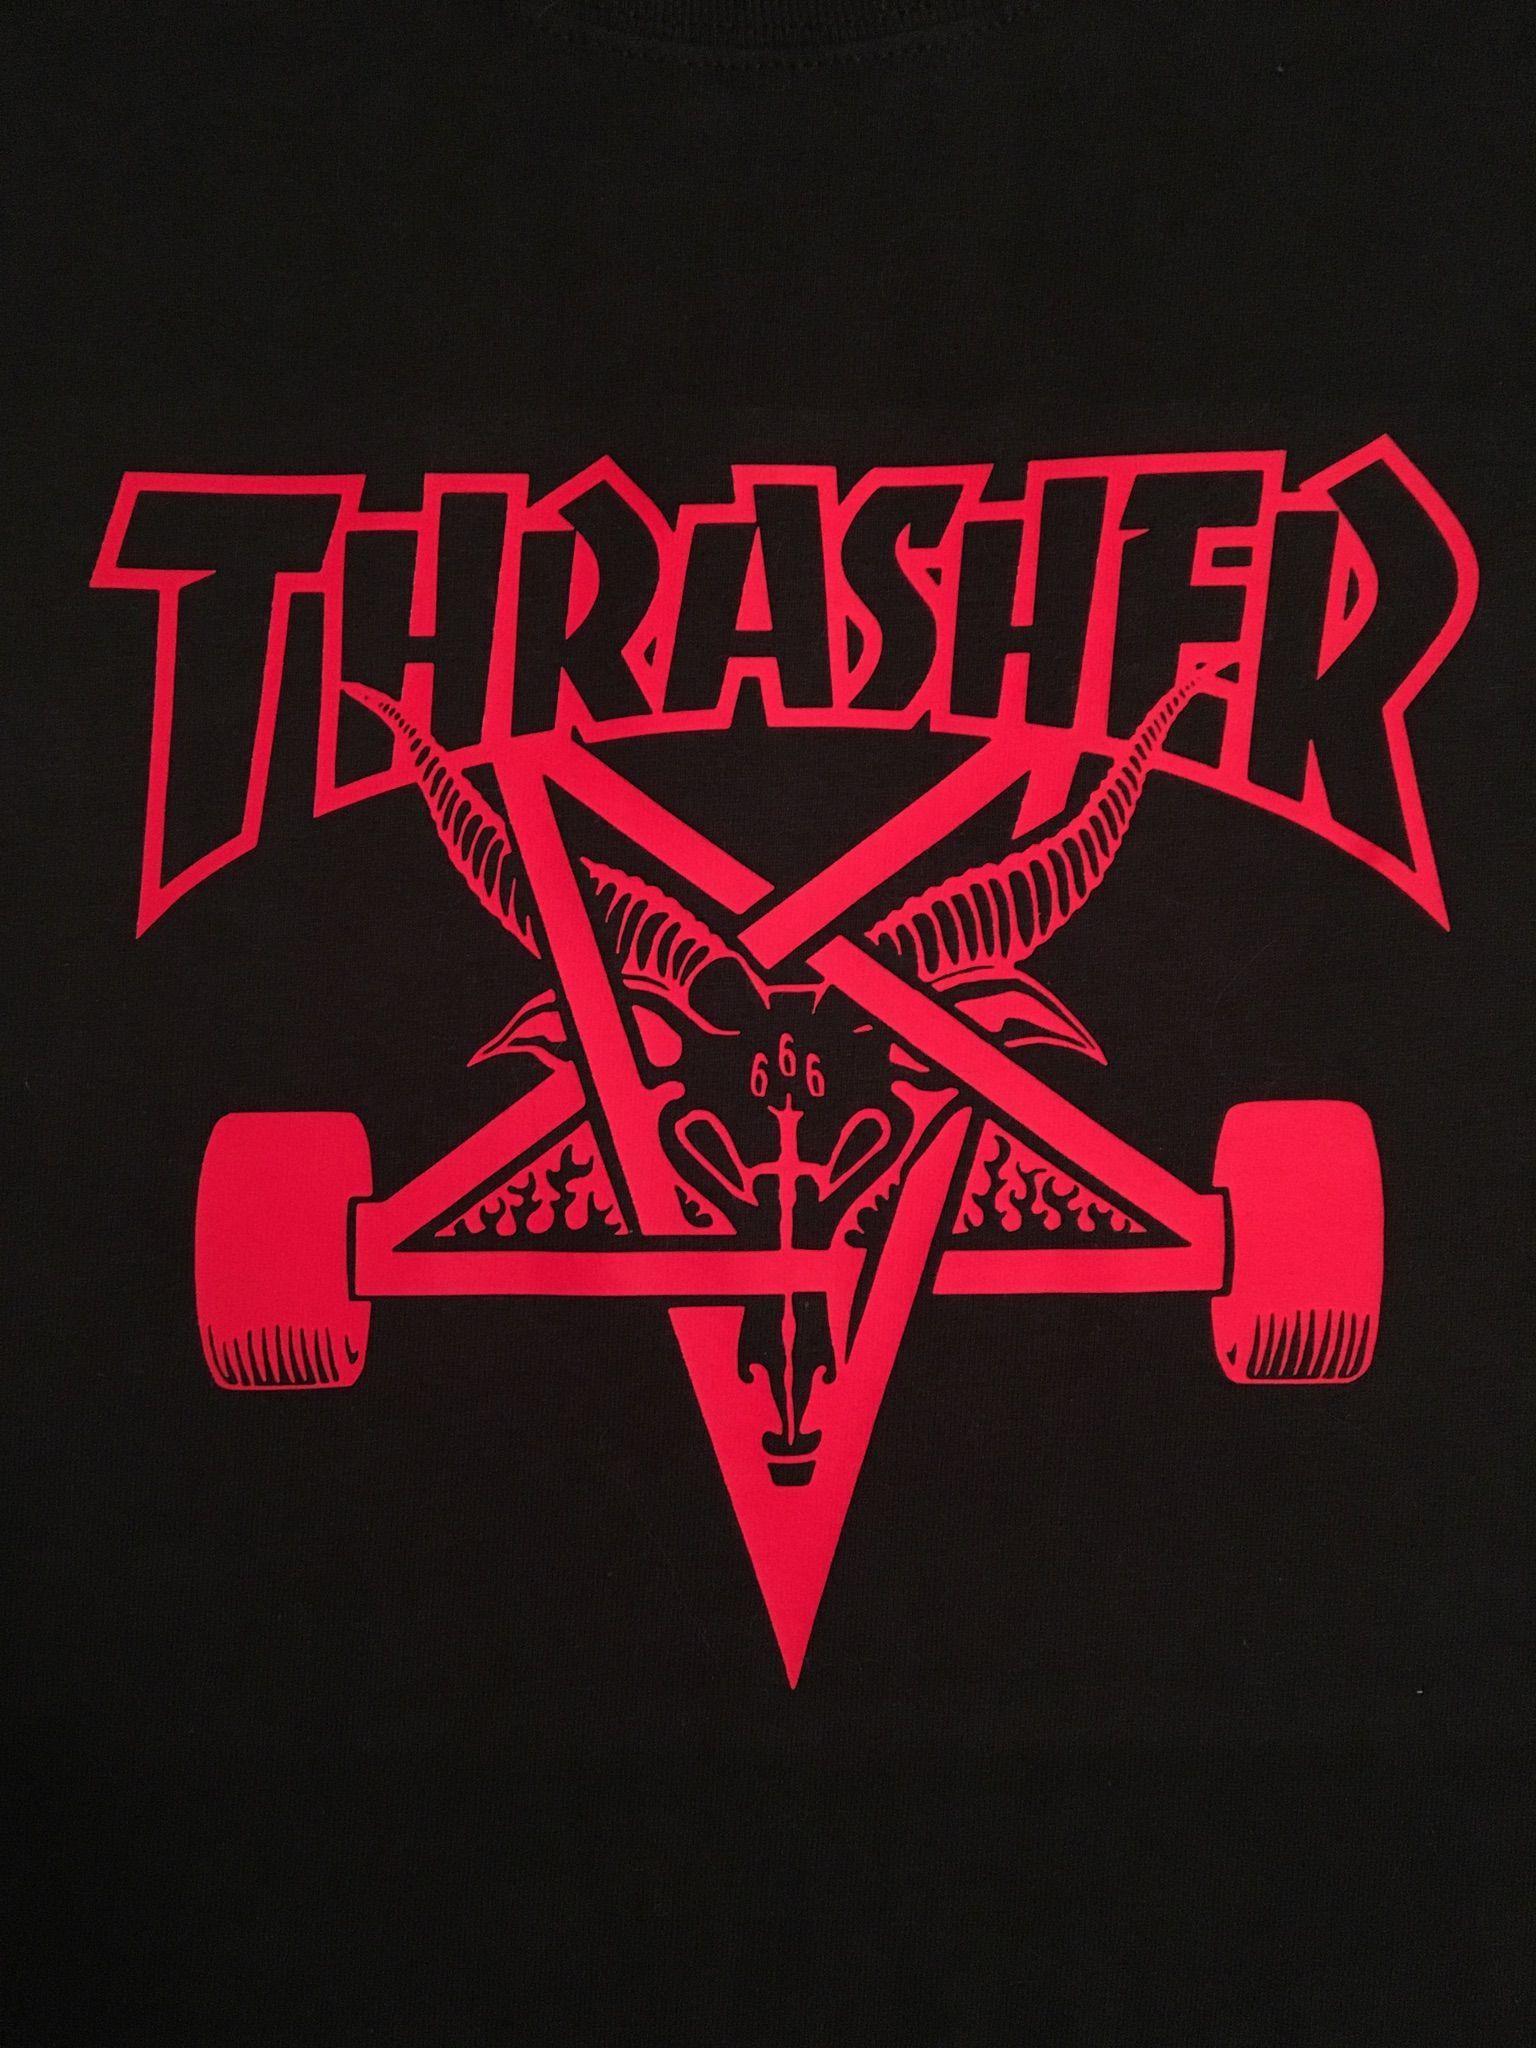 Thrasher Skate Goat Logo - Thrasher Skateboard Magazine, Skate Goat | DIY shirts in 2019 ...